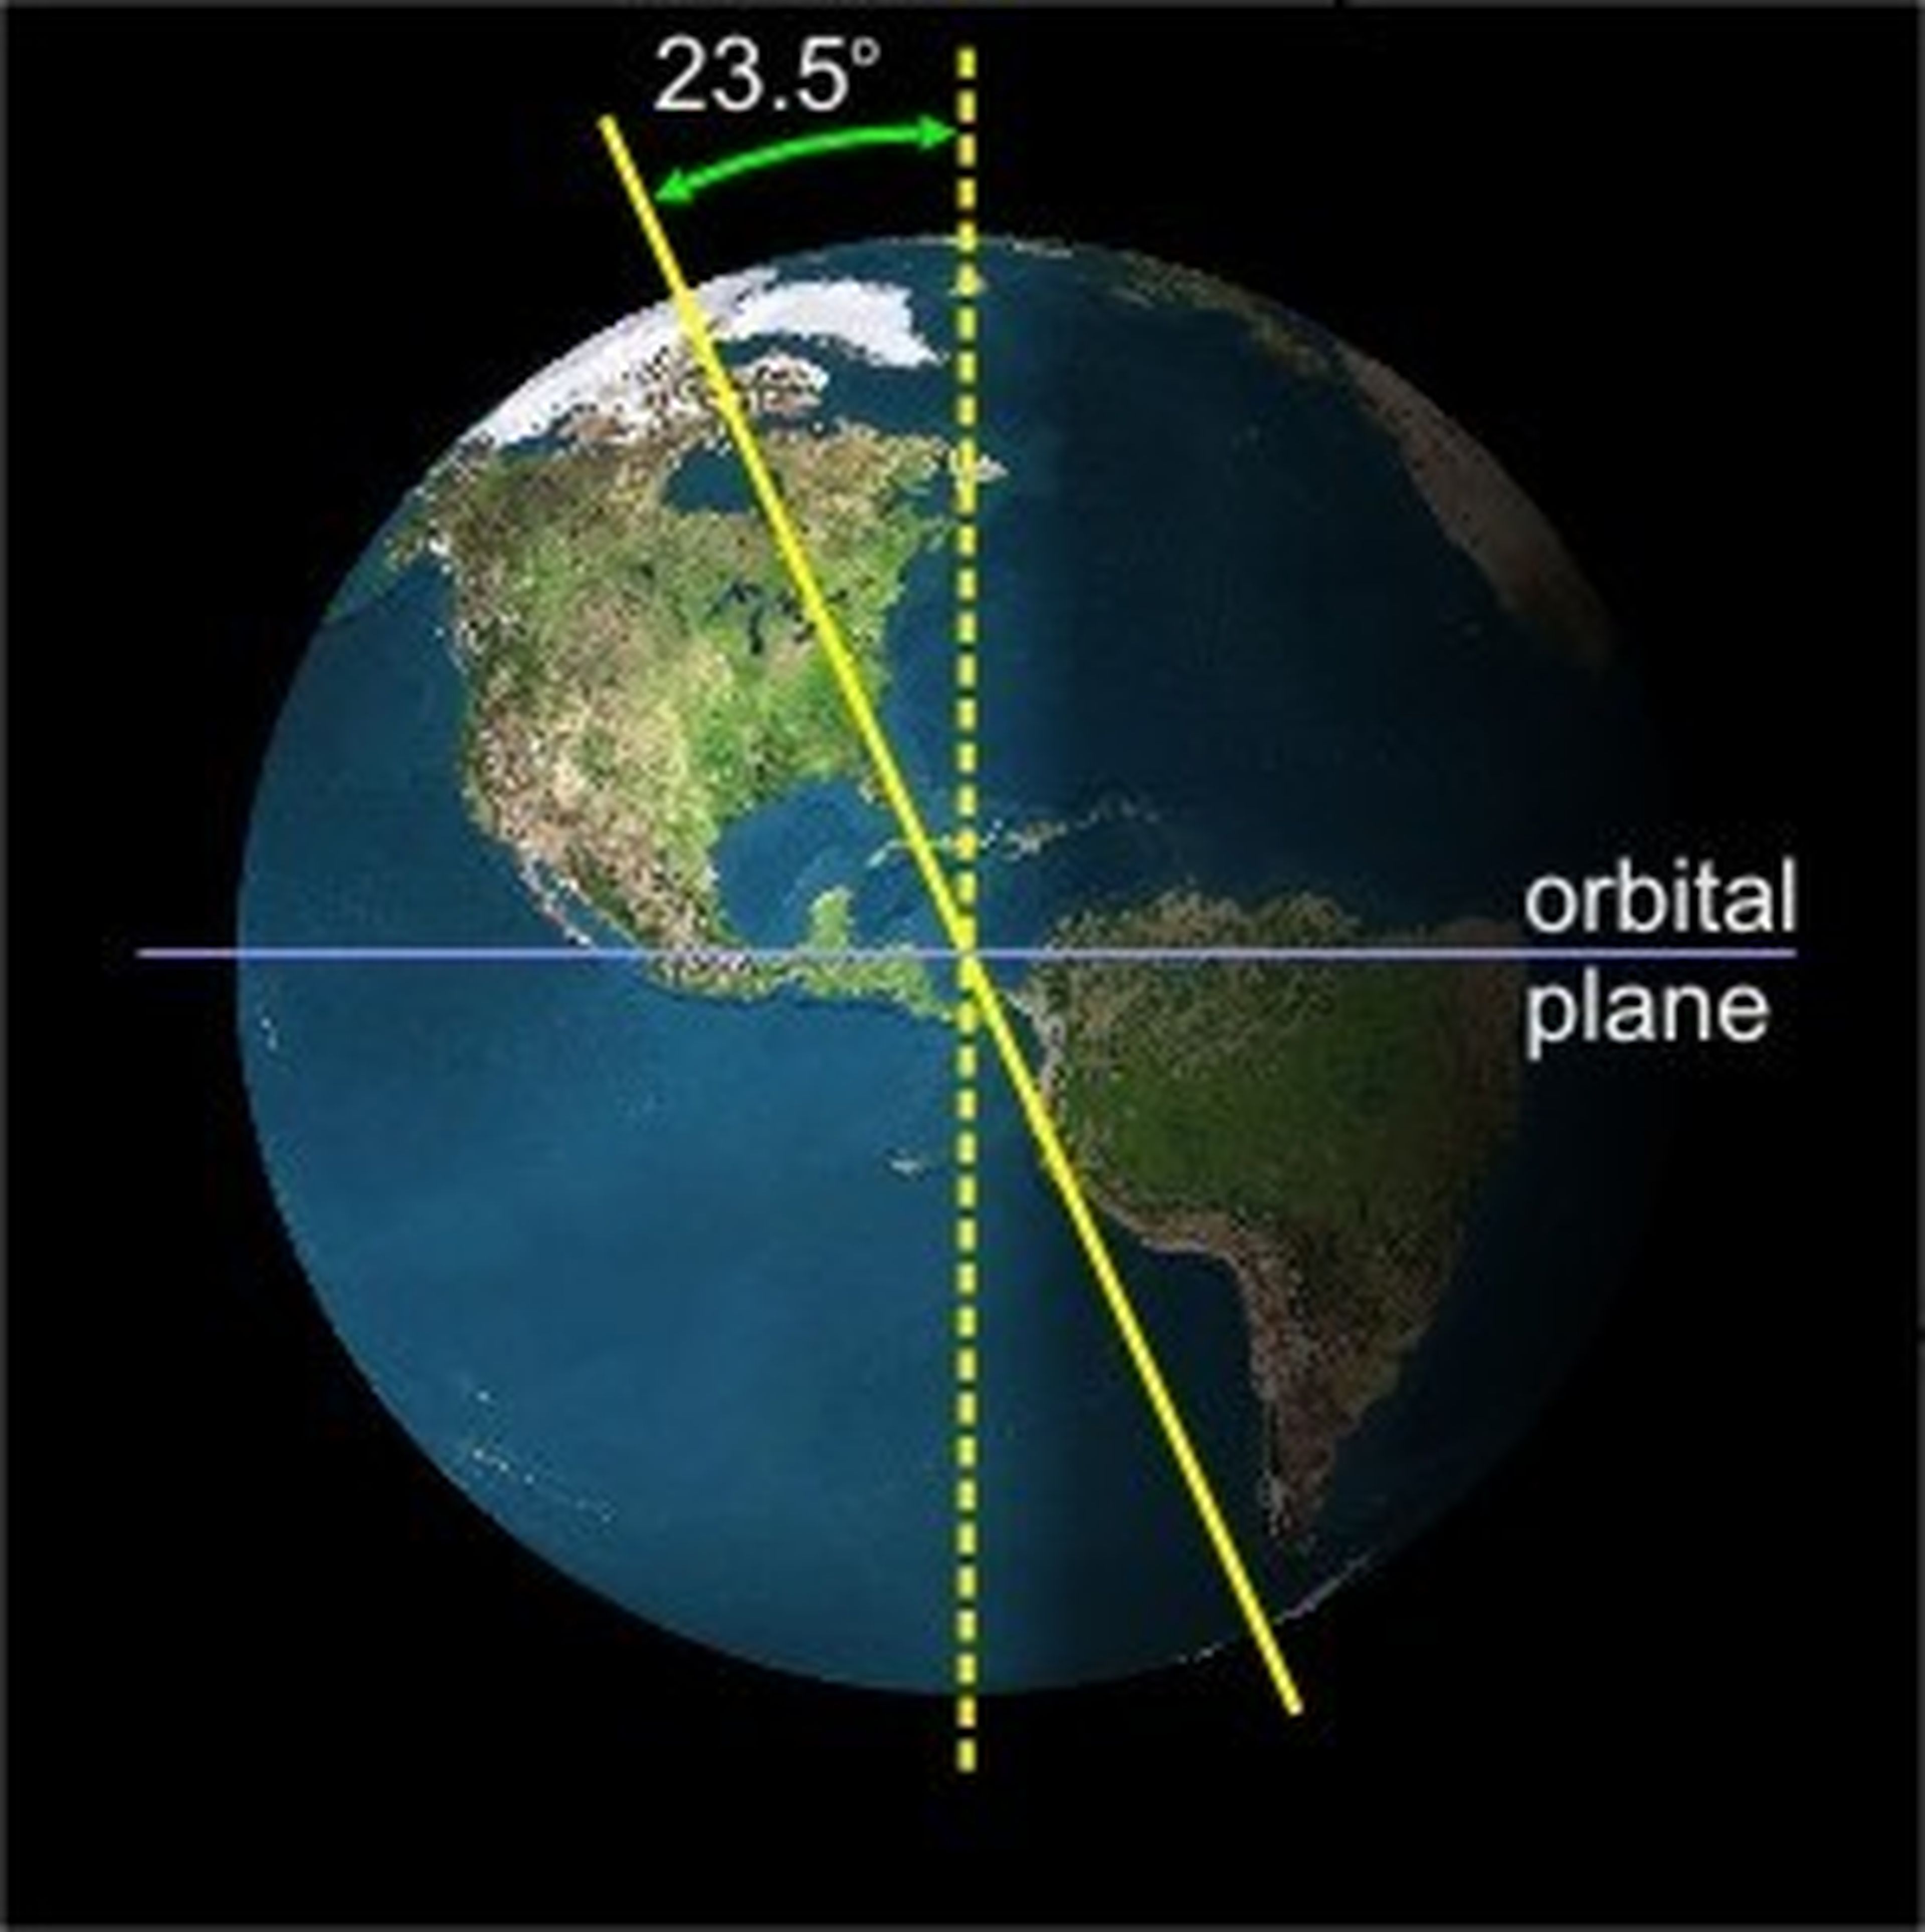 El eje de la Tierra se inclina aproximadamente 23.5 grados desde la línea perpendicular